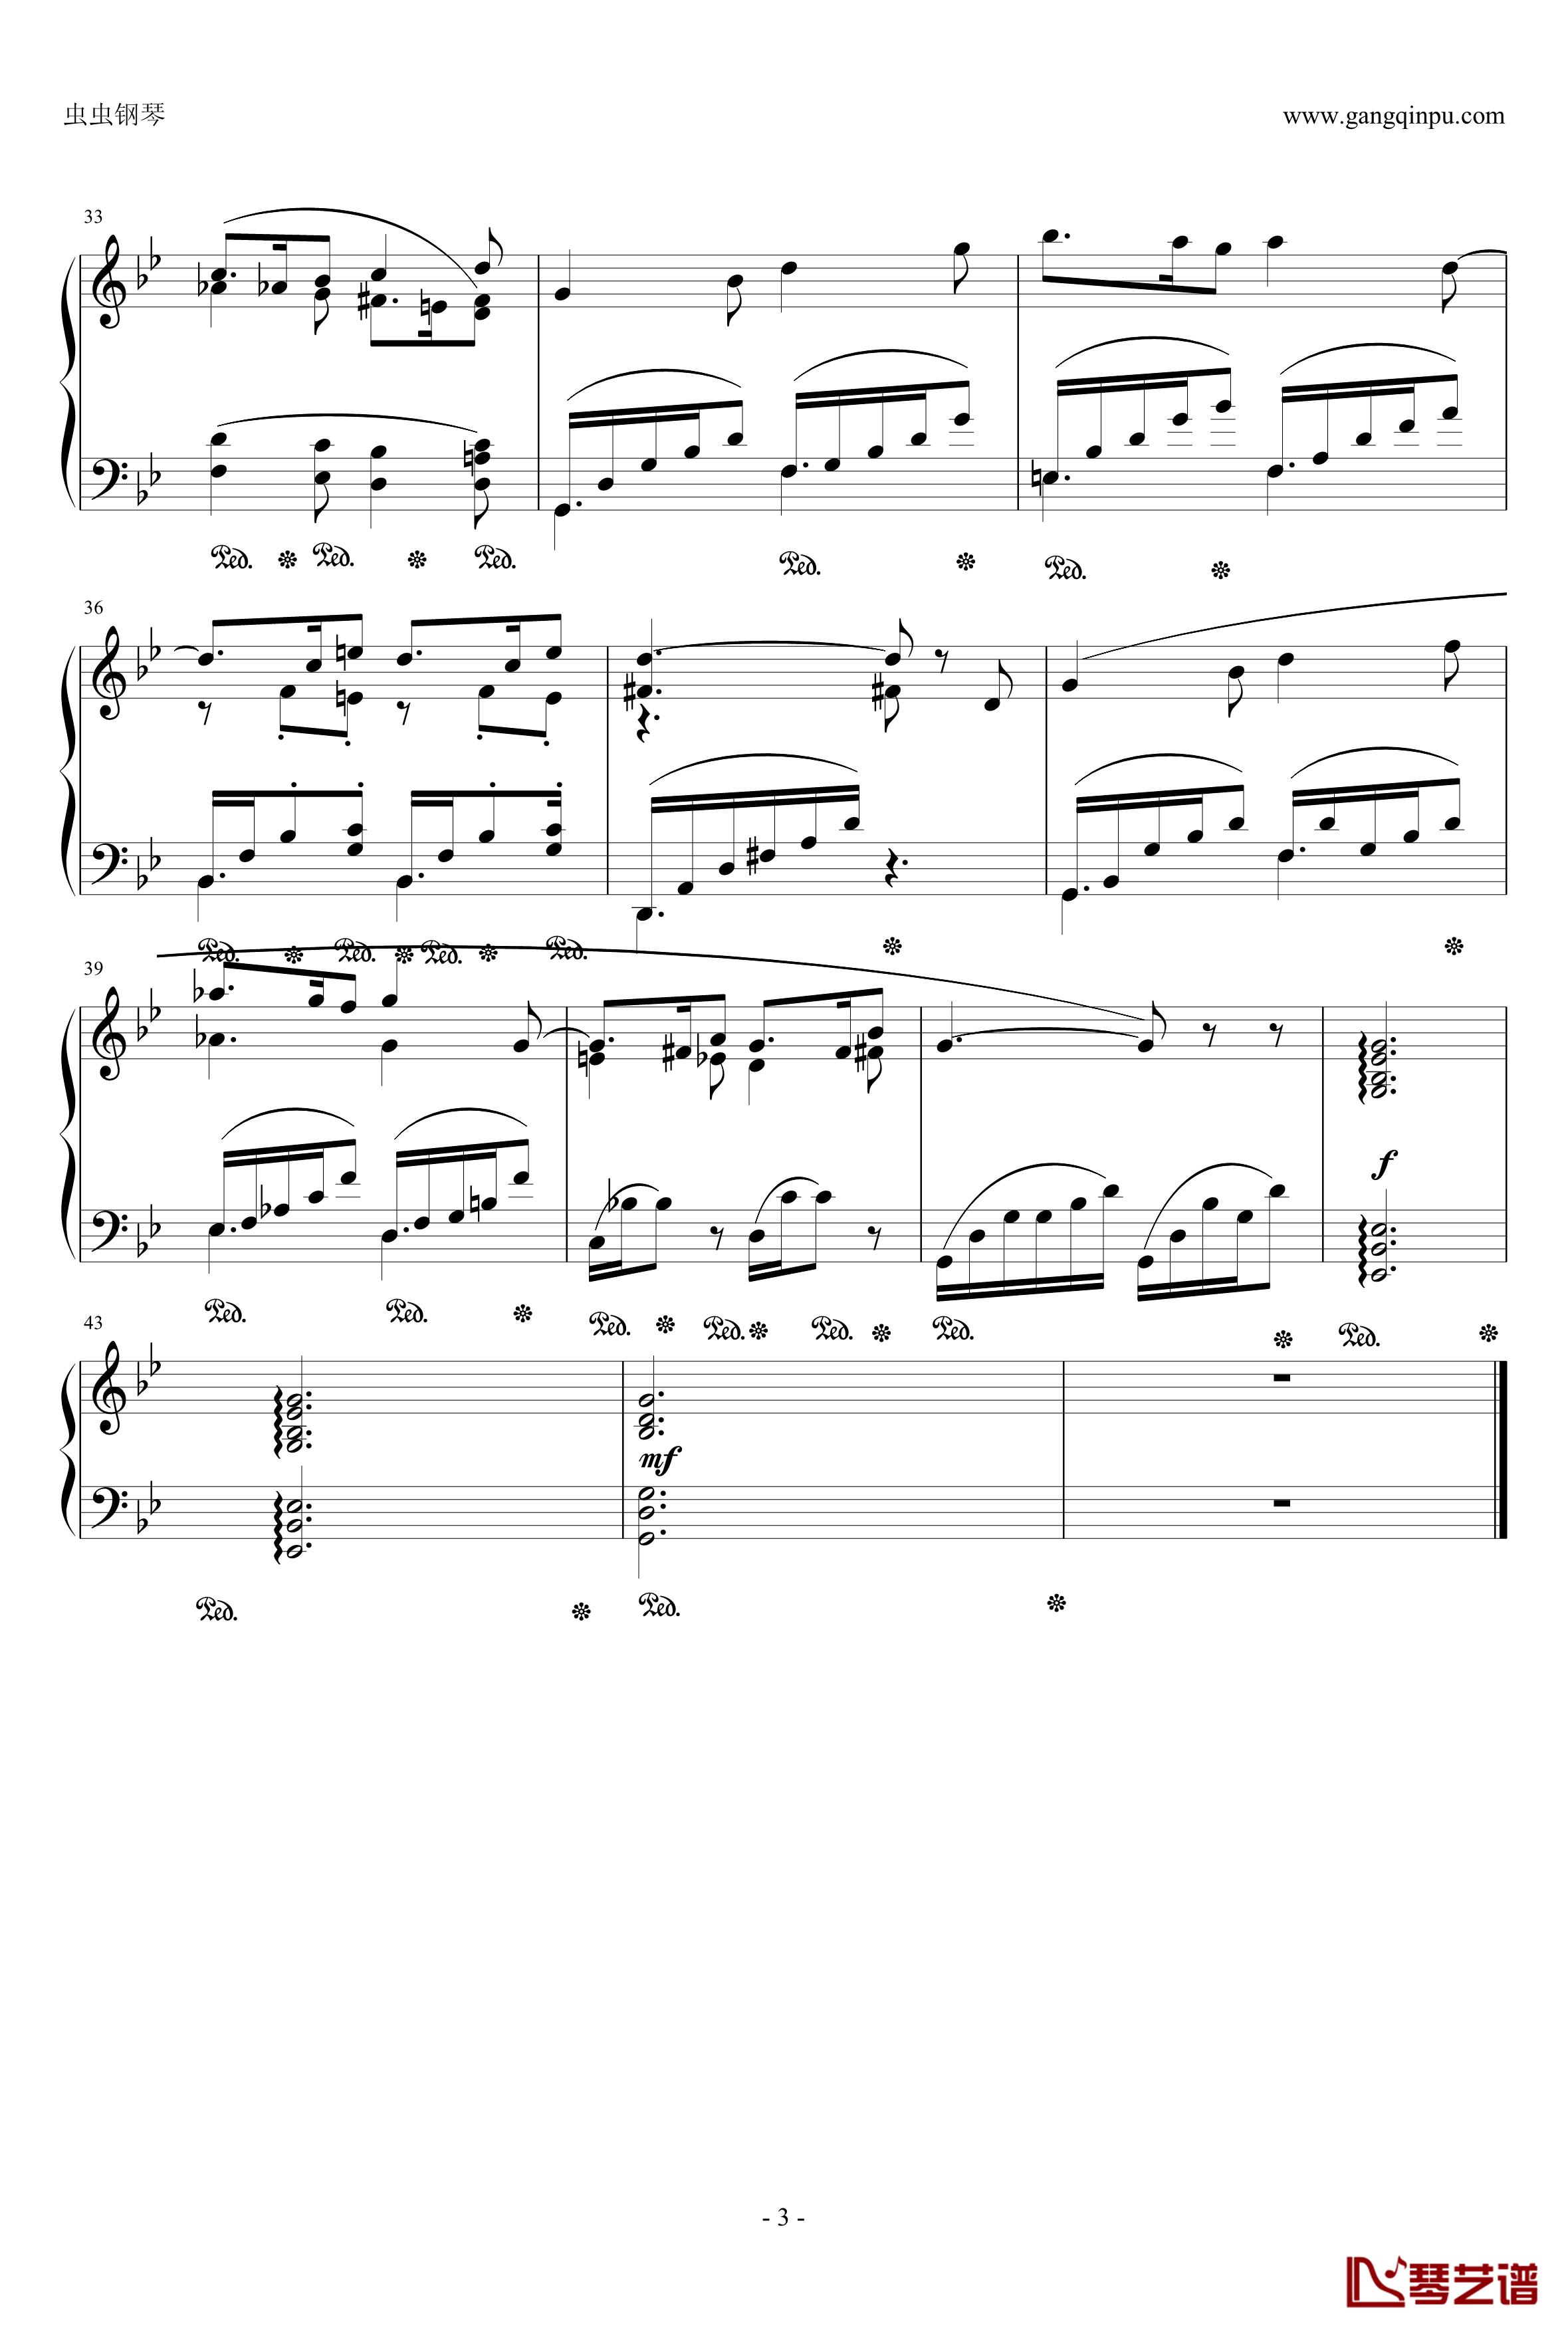 西西里舞曲钢琴谱-福莱3